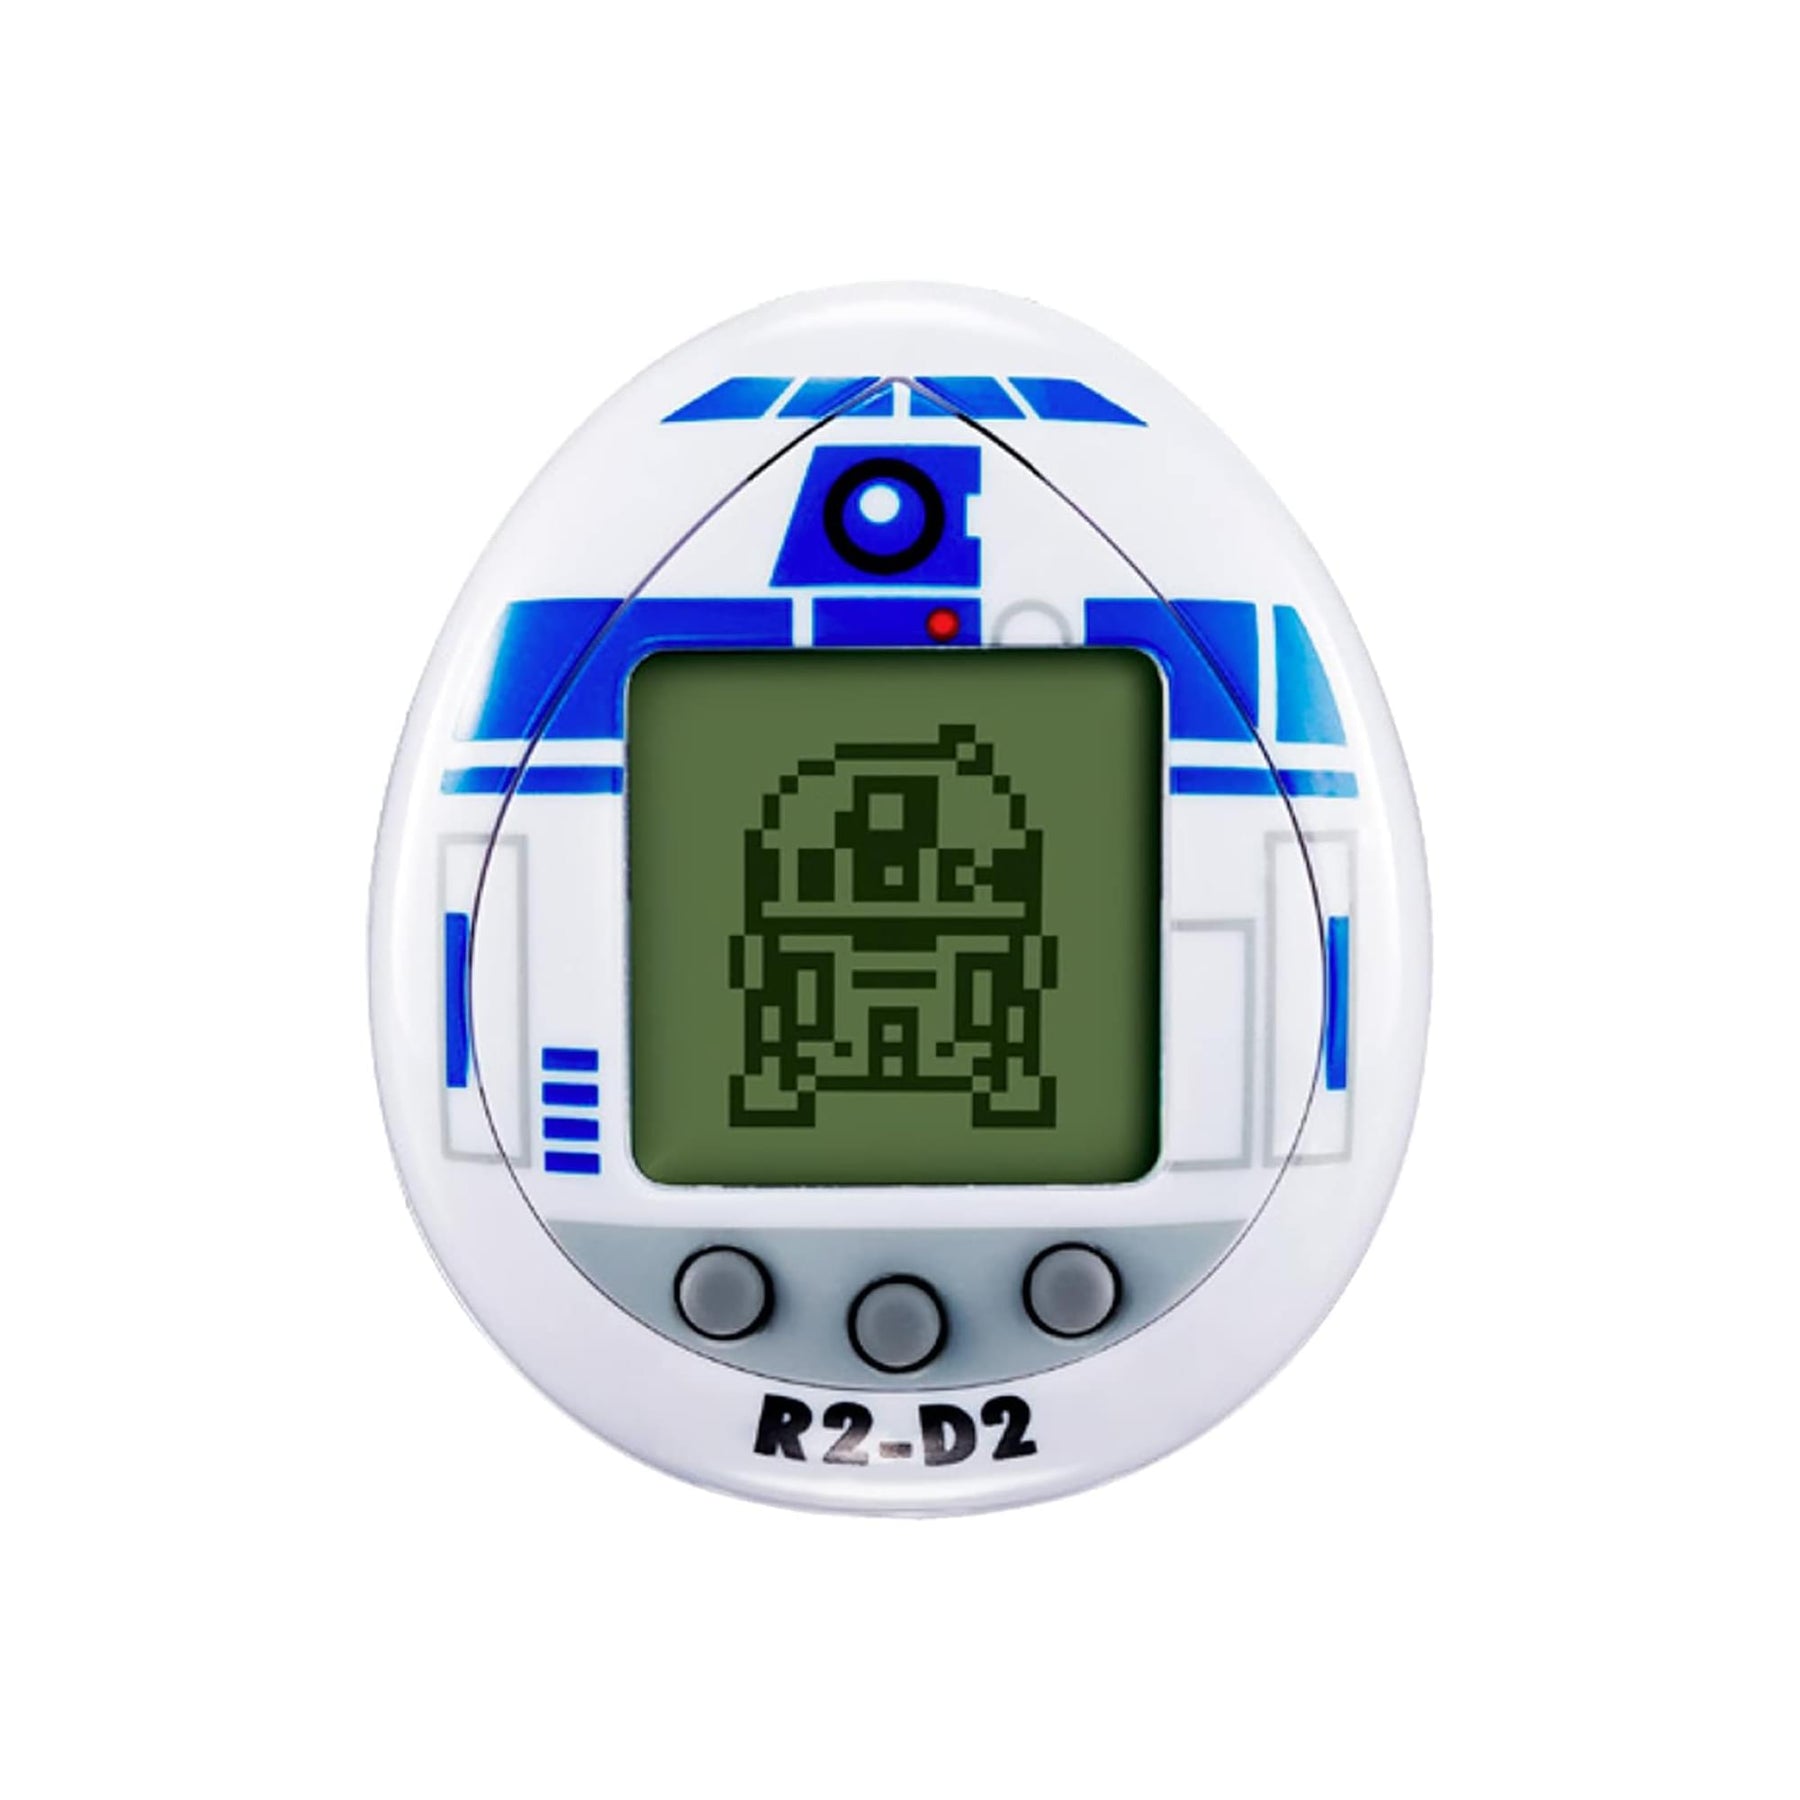 Tamagotchi Star Wars R2-D2 Virtual Pet | White